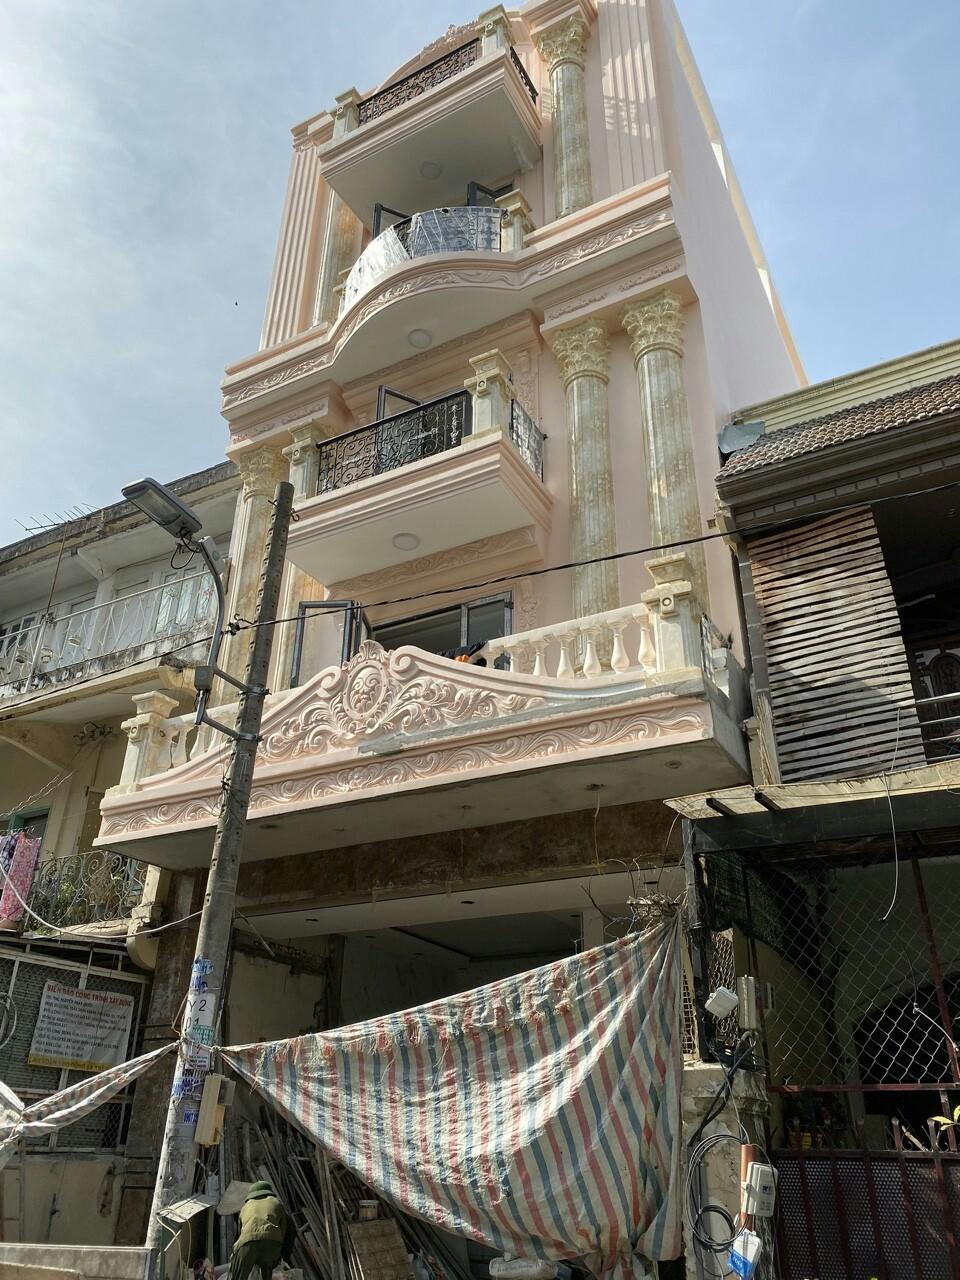  Bán nhà góc 2 mặt tiền đường Lương Nhữ Học - Hồng Bàng, Quận 5, giá 17 tỷ